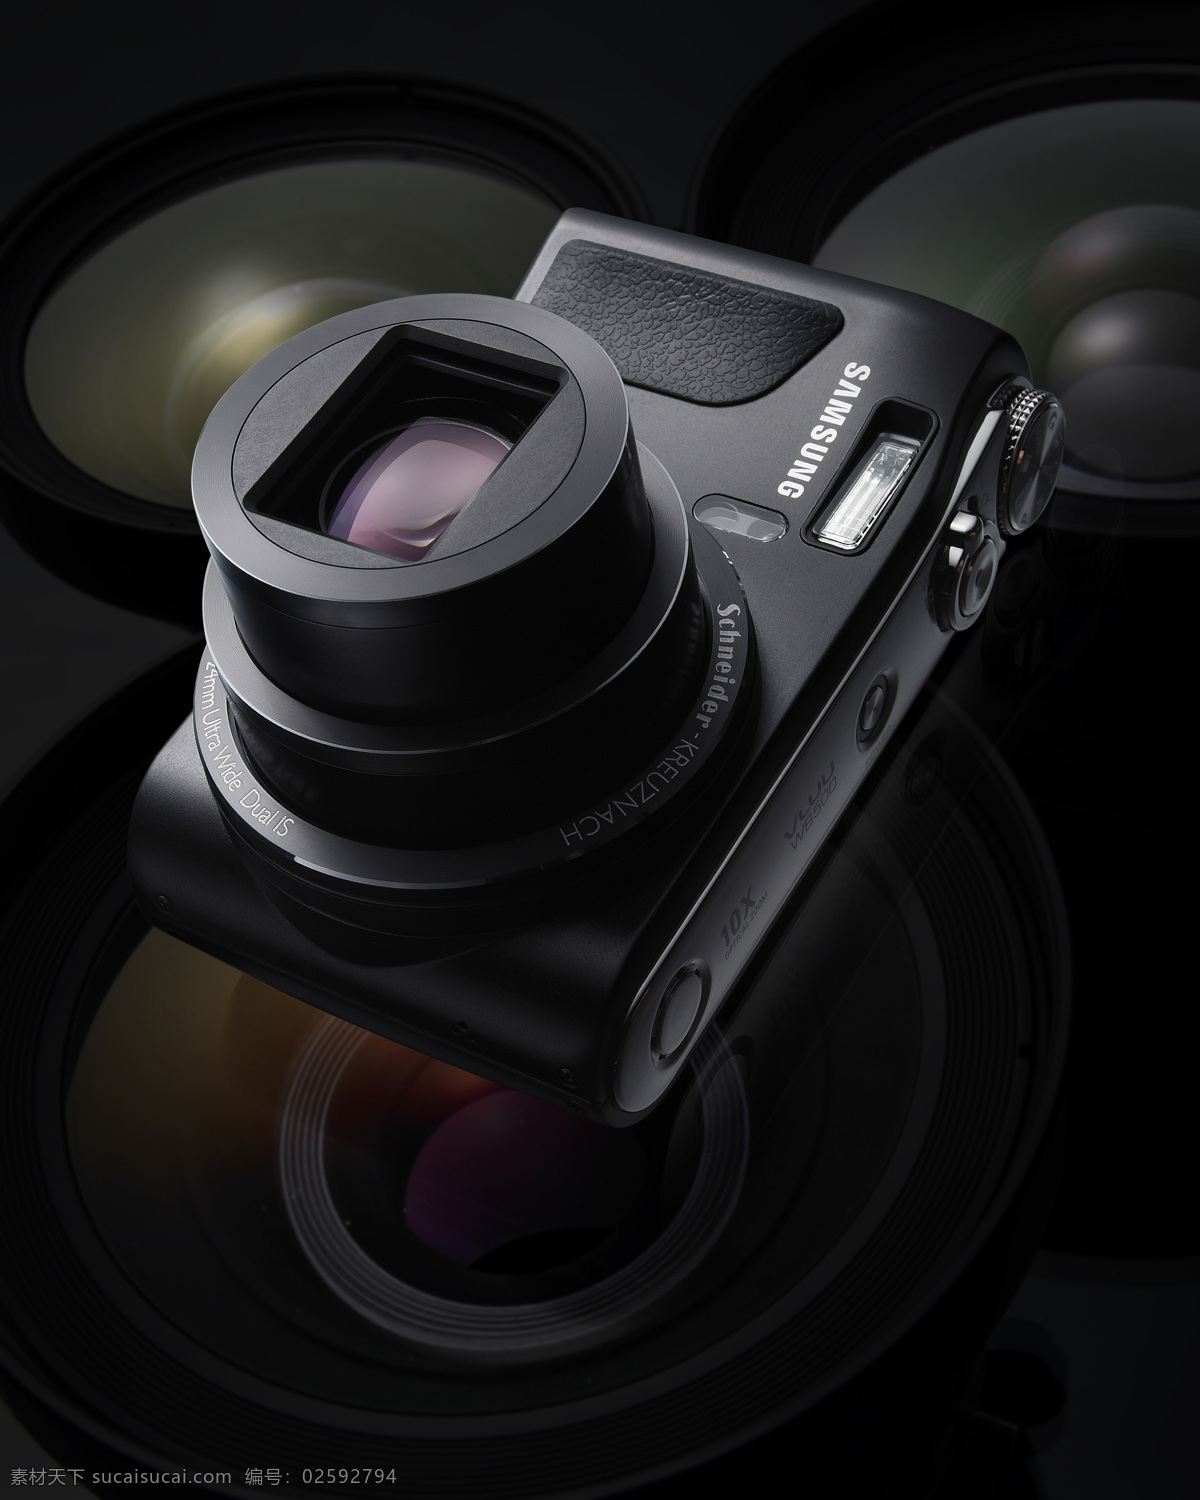 三星 数码相机 黑色 设计素材 模板下载 三星数码相机 长焦 psd源文件